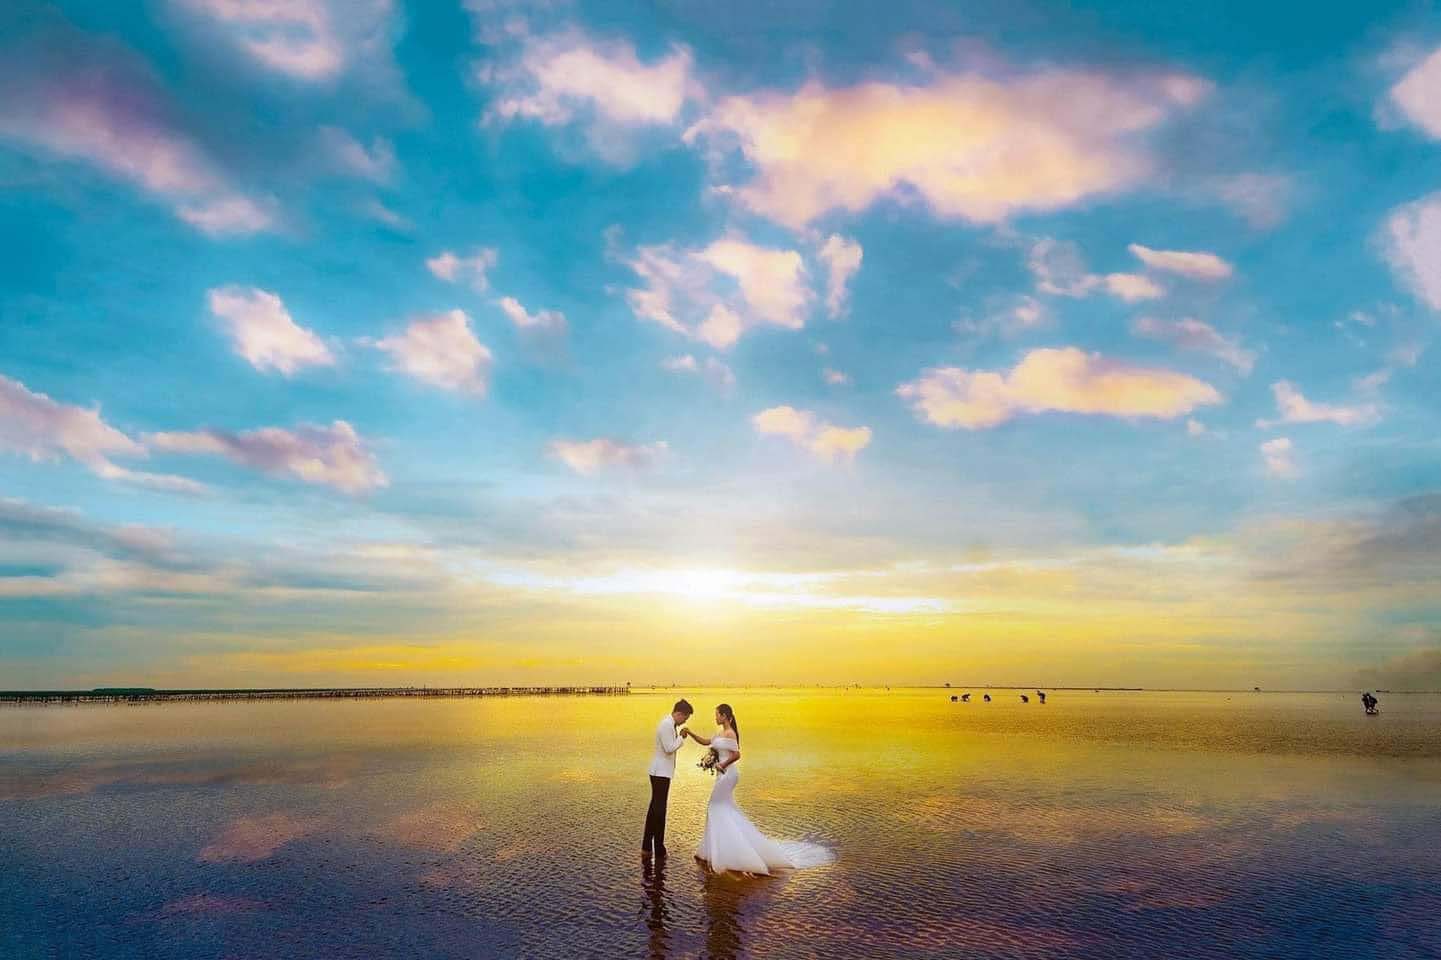 Biển vô cực Thái Bình là một trong những địa điểm du lịch nổi tiếng nhất ở Việt Nam. Với màu xanh ngắt của biển cả và những bãi cát trắng trải dài, bạn sẽ không thể rời mắt khỏi những hình ảnh đẹp mê hồn của biển vô cực Thái Bình. Hãy cùng xem và nhận thấy rằng vẻ đẹp này là đích thực không thể chối từ.